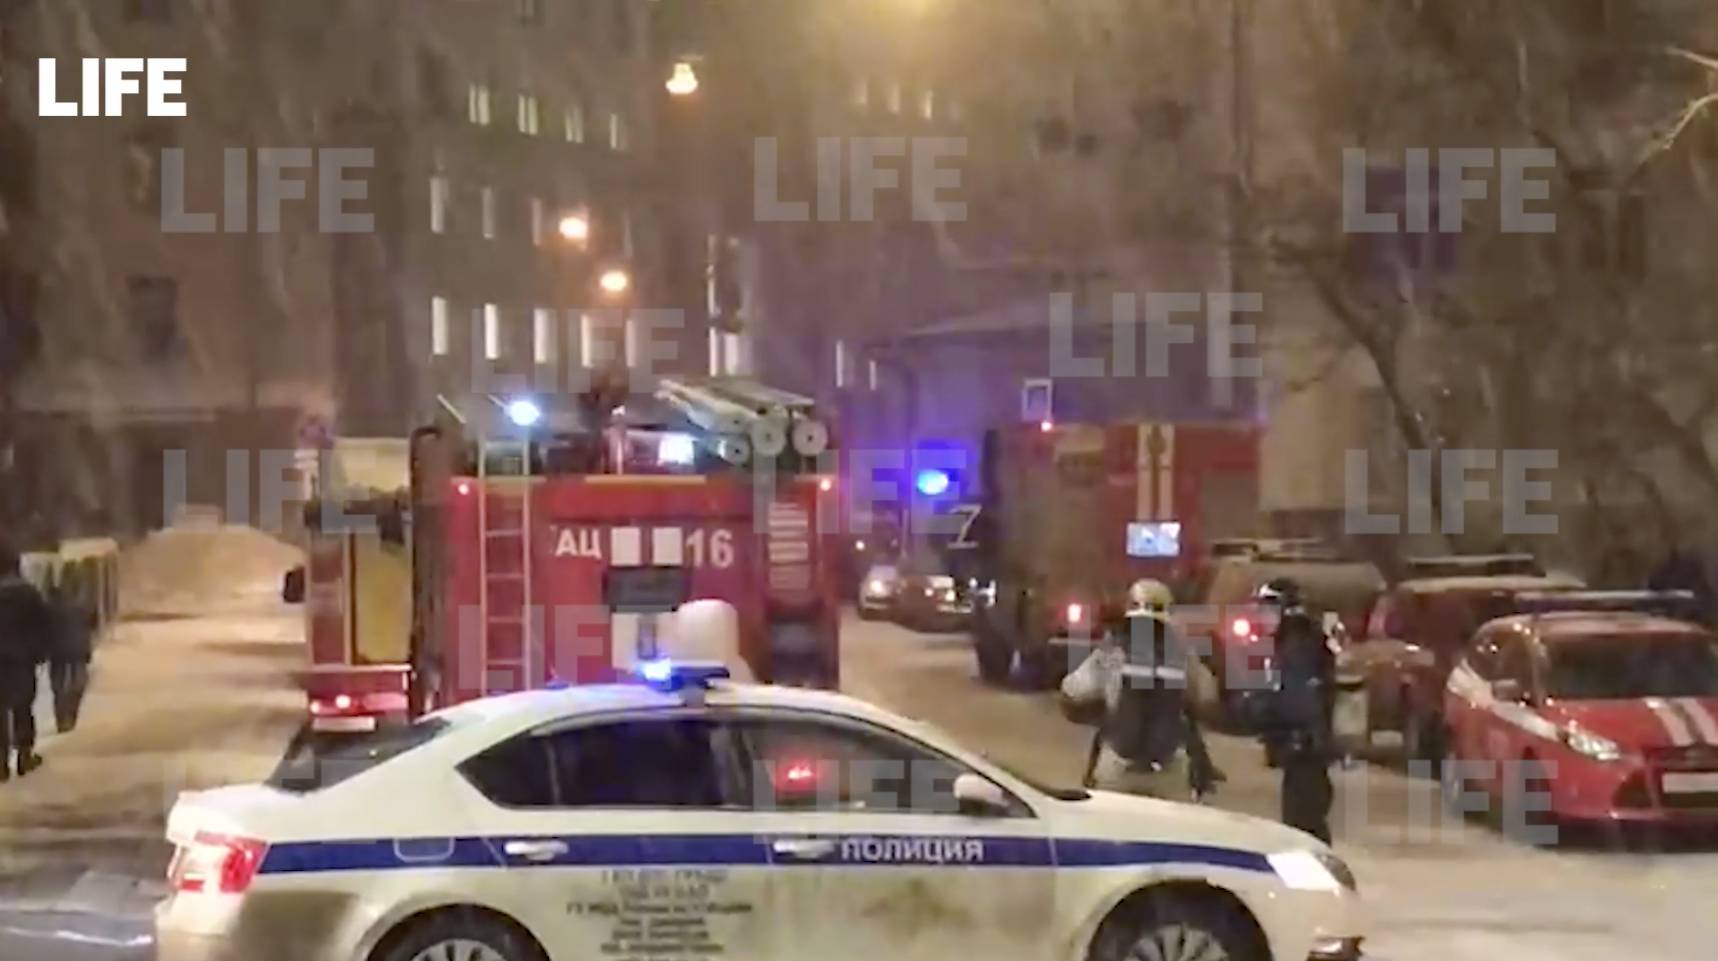 Лайф публикует видео обстановки у столичного главка МВД, где вспыхнул пожар